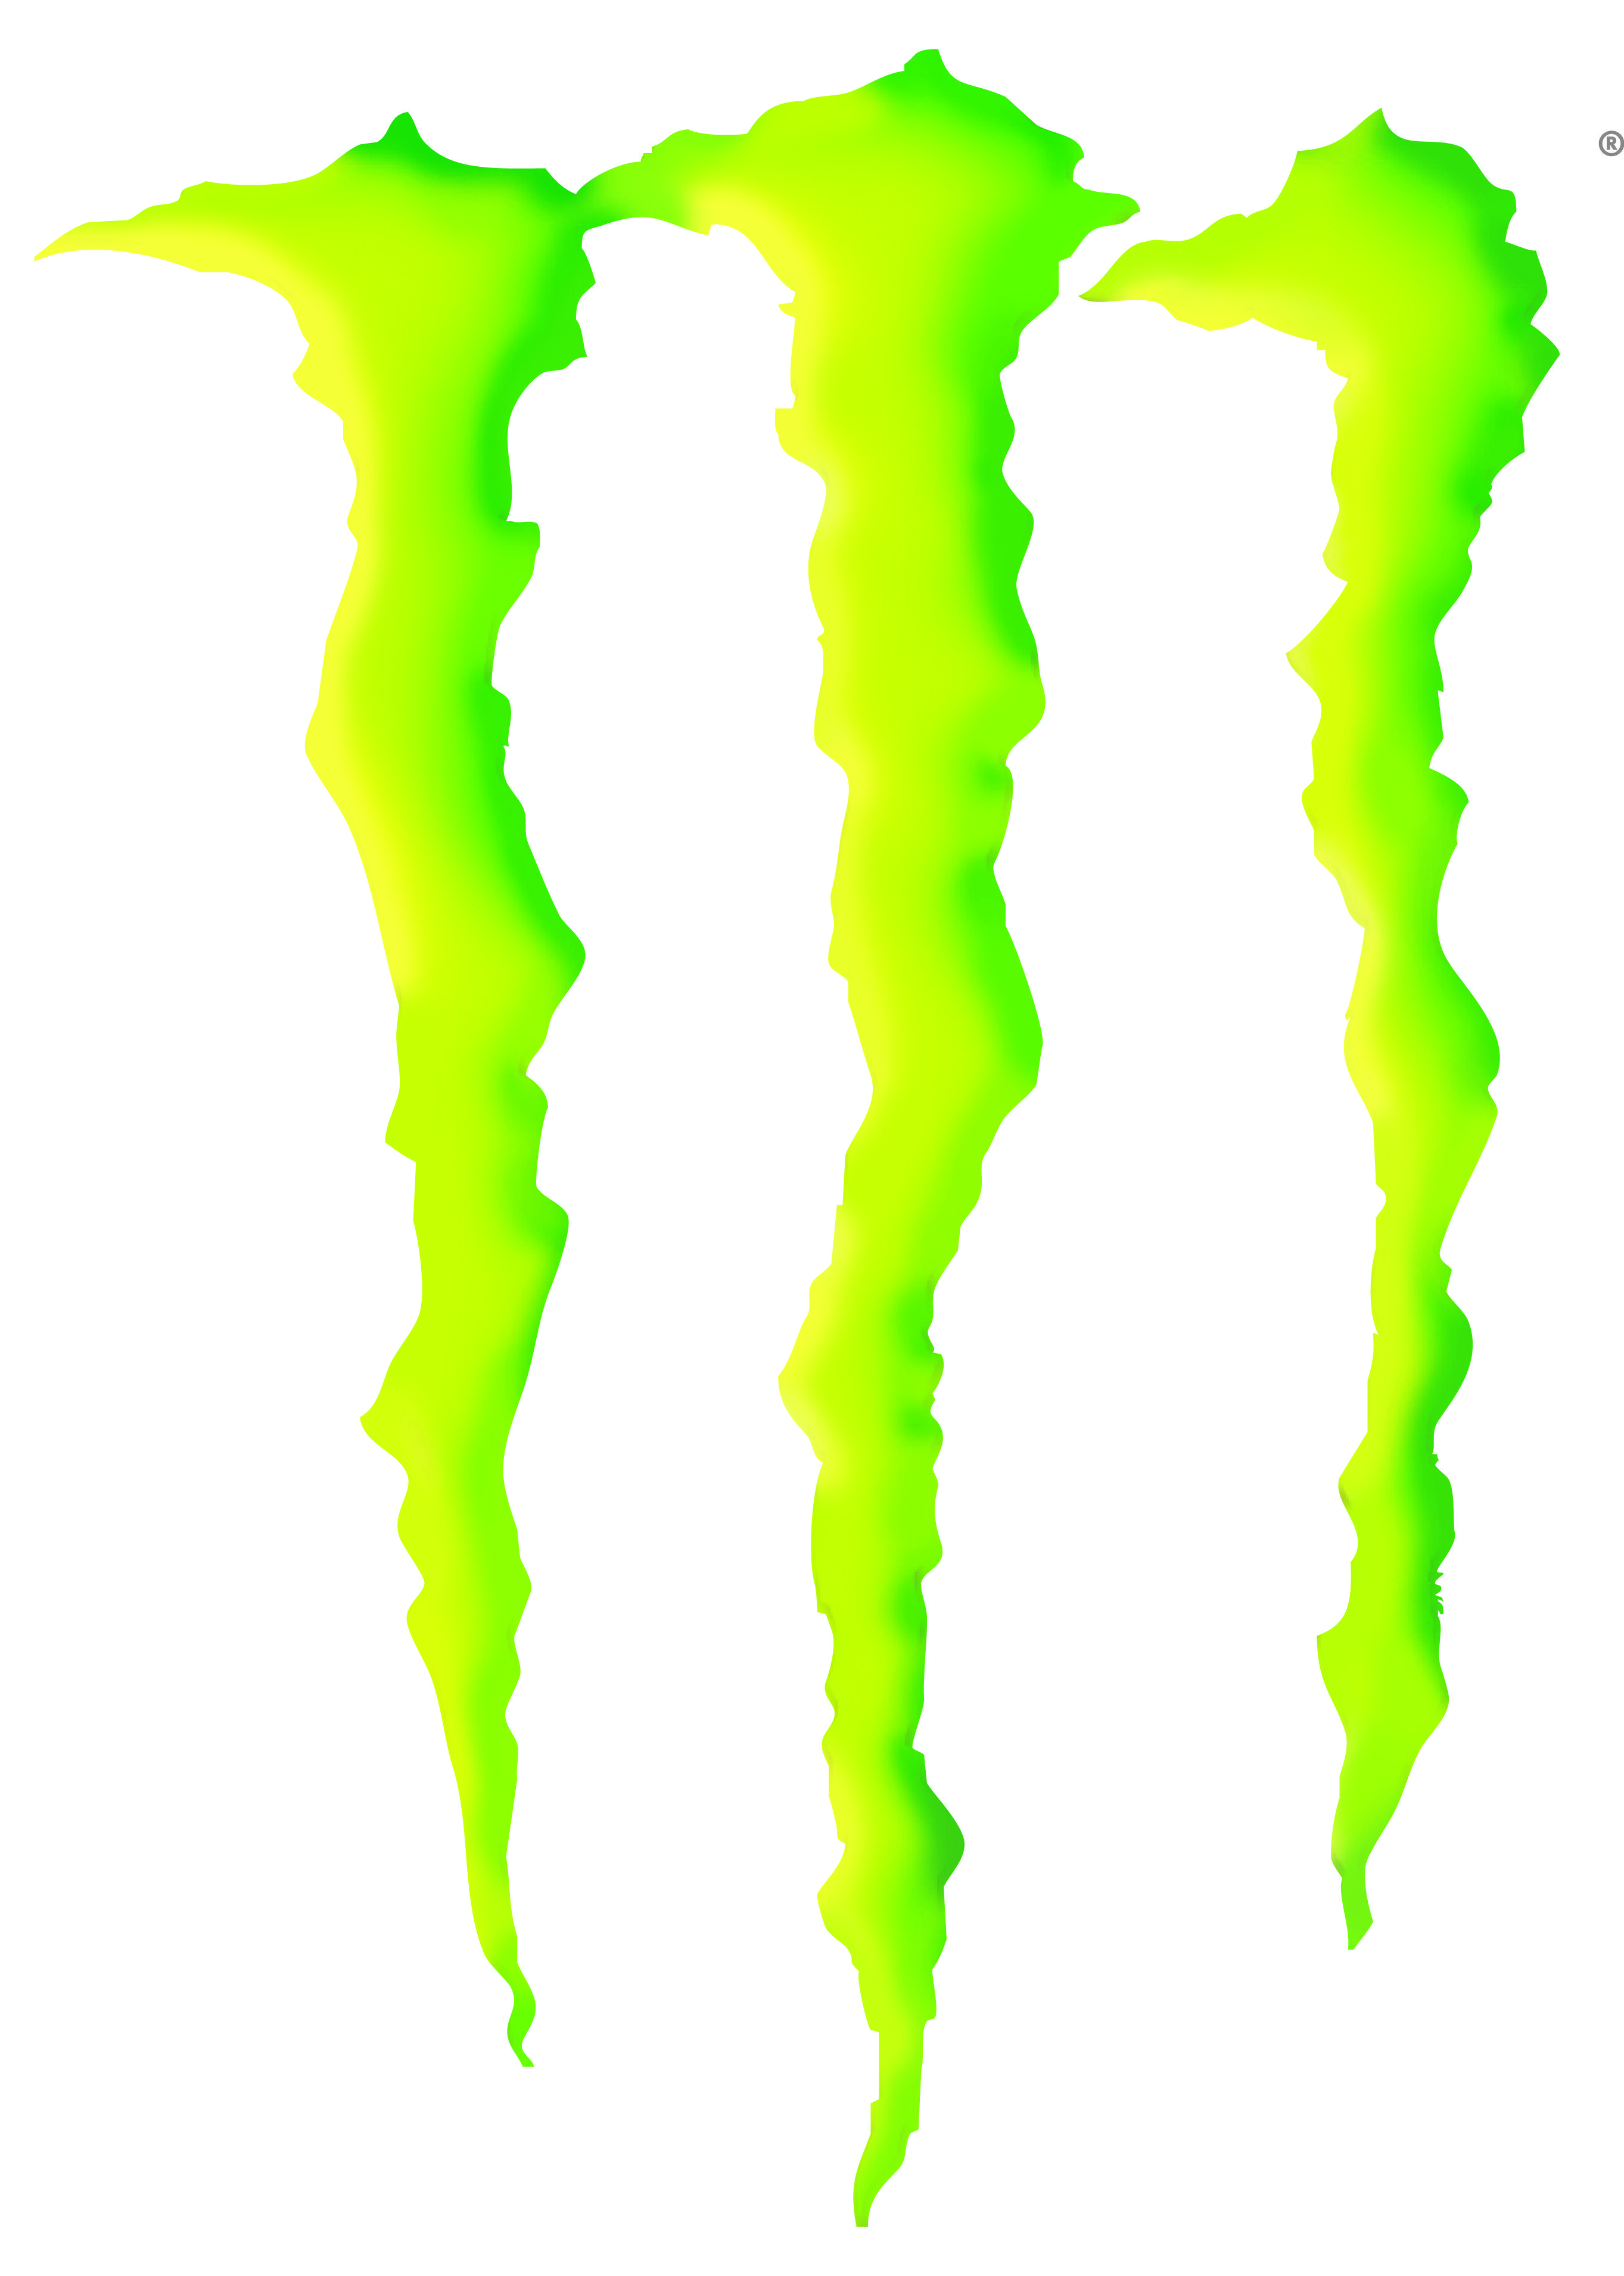 The Monster Energy Logo - Free Monster Energy Logo, Download Free Clip Art, Free Clip Art on ...